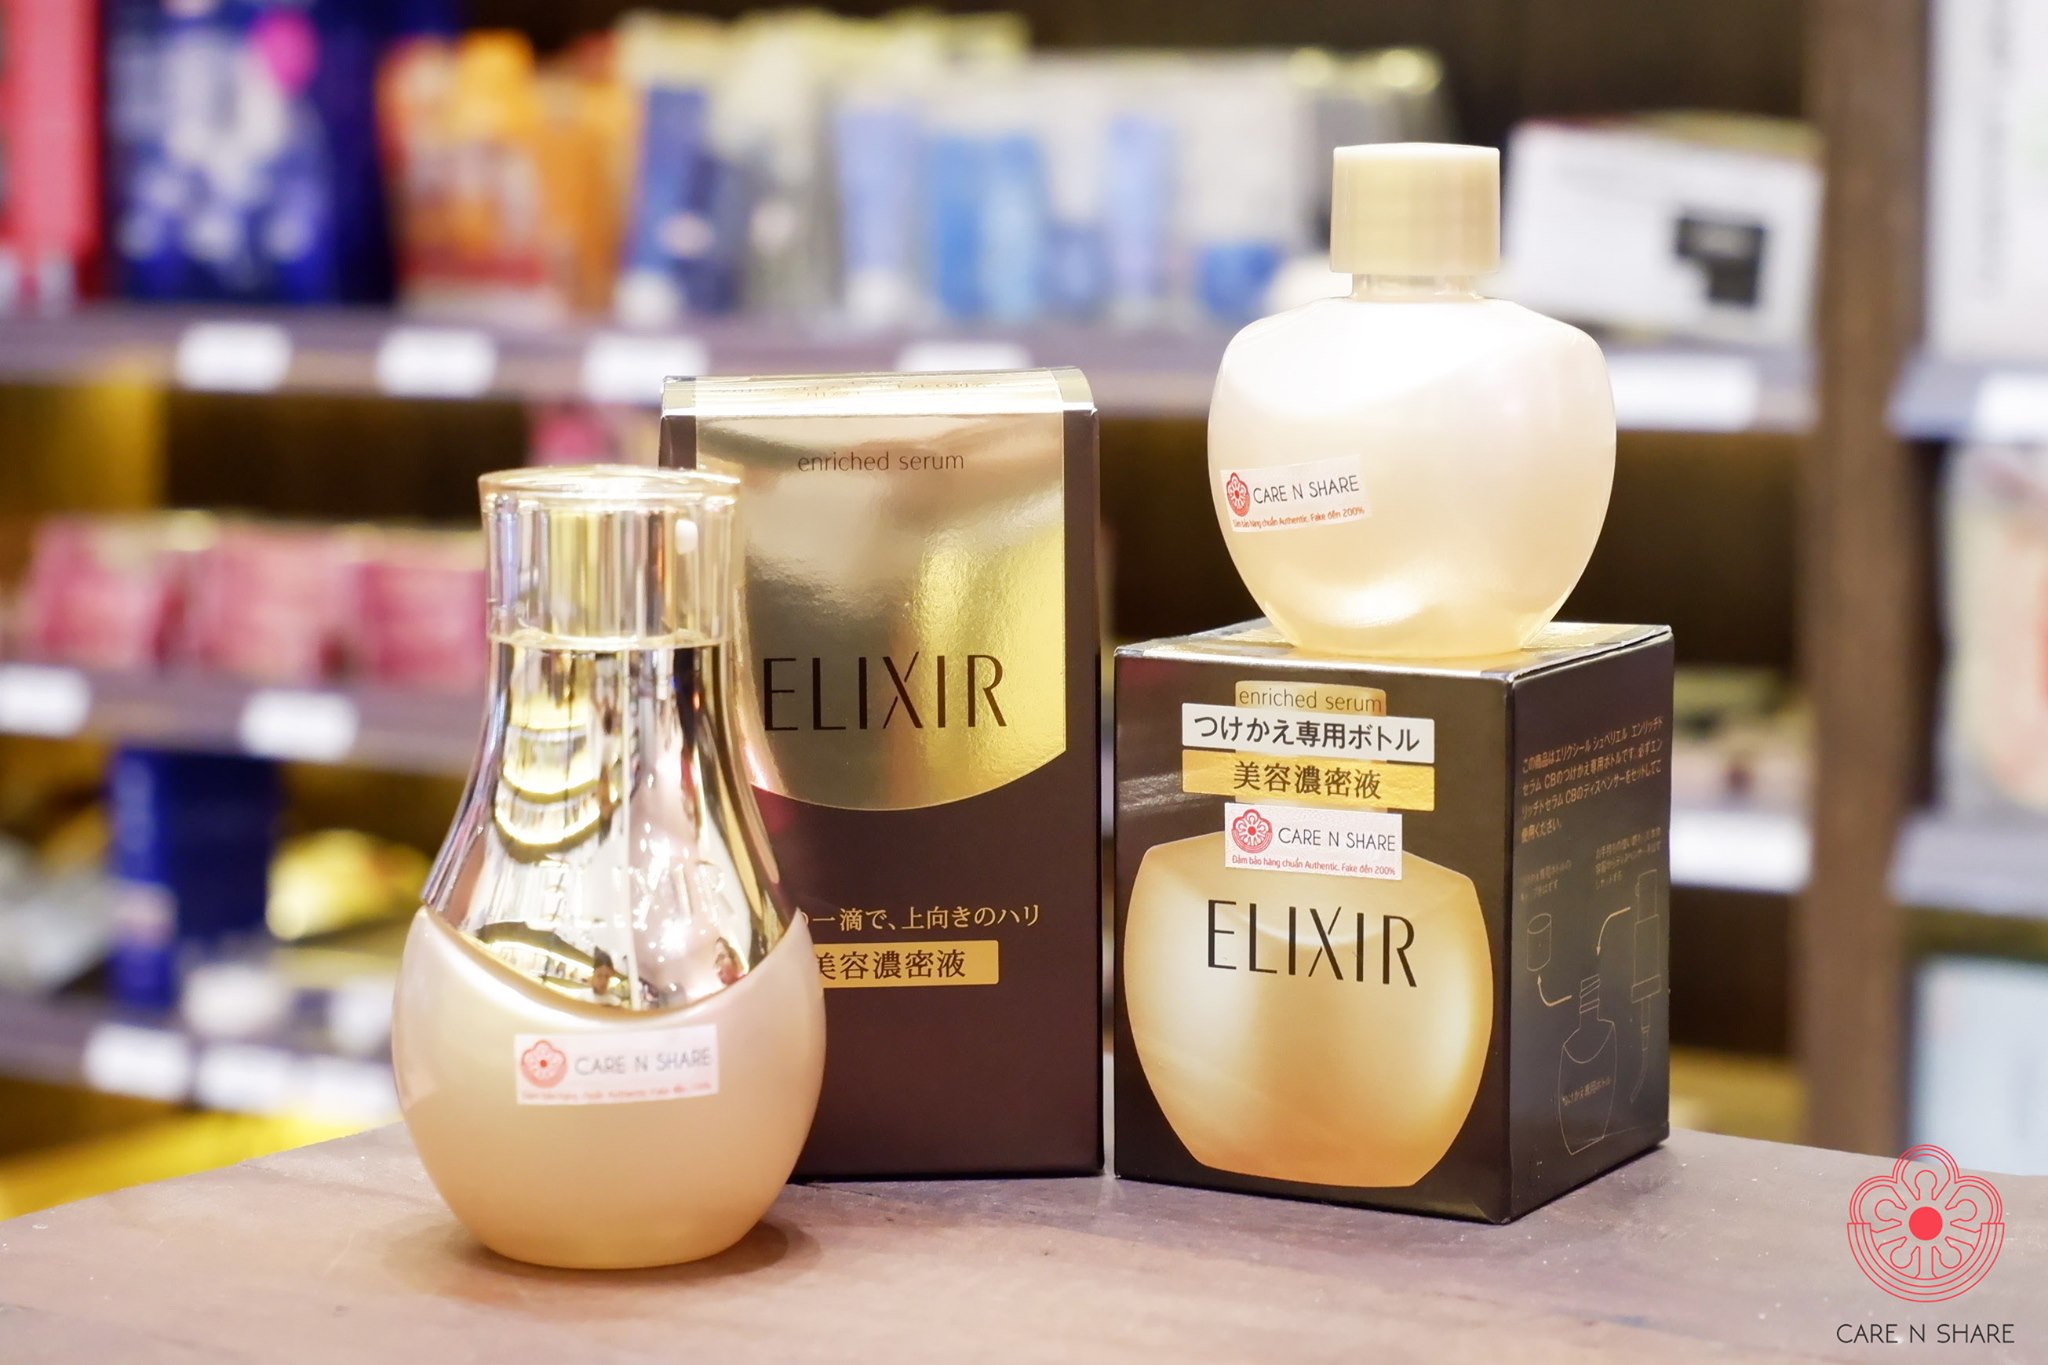 Elixir enriched serum refill